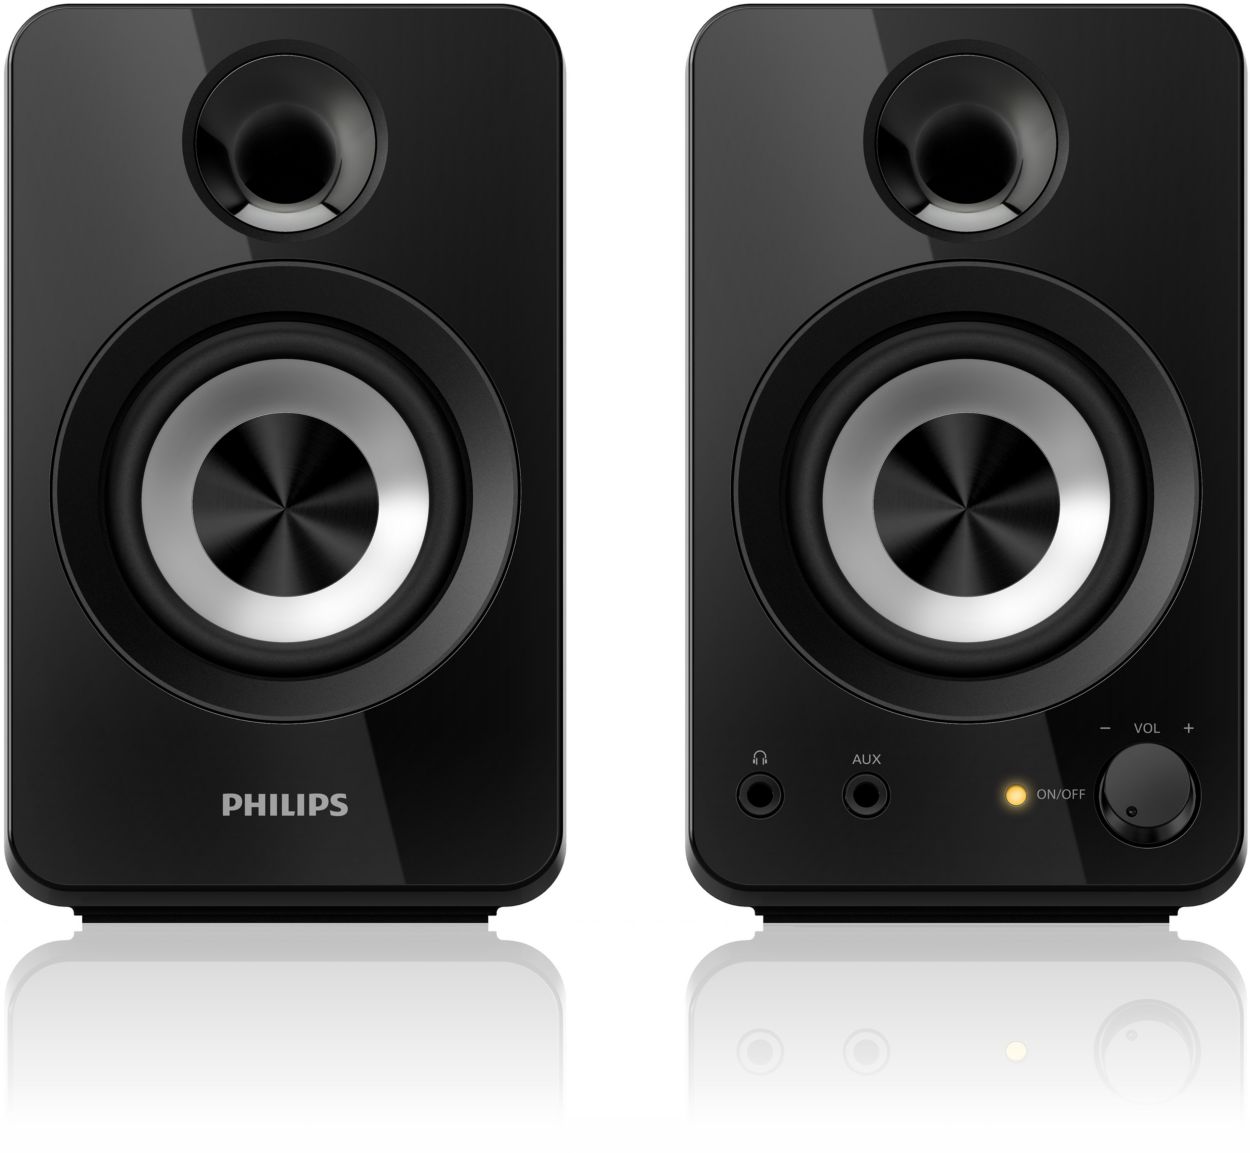 Высшее качество звучание. Колонки Philips spa2210. Компьютерная акустика Philips spa1330. Колонки Philips spa7210. Колонки Филипс 2.1 компьютерные.